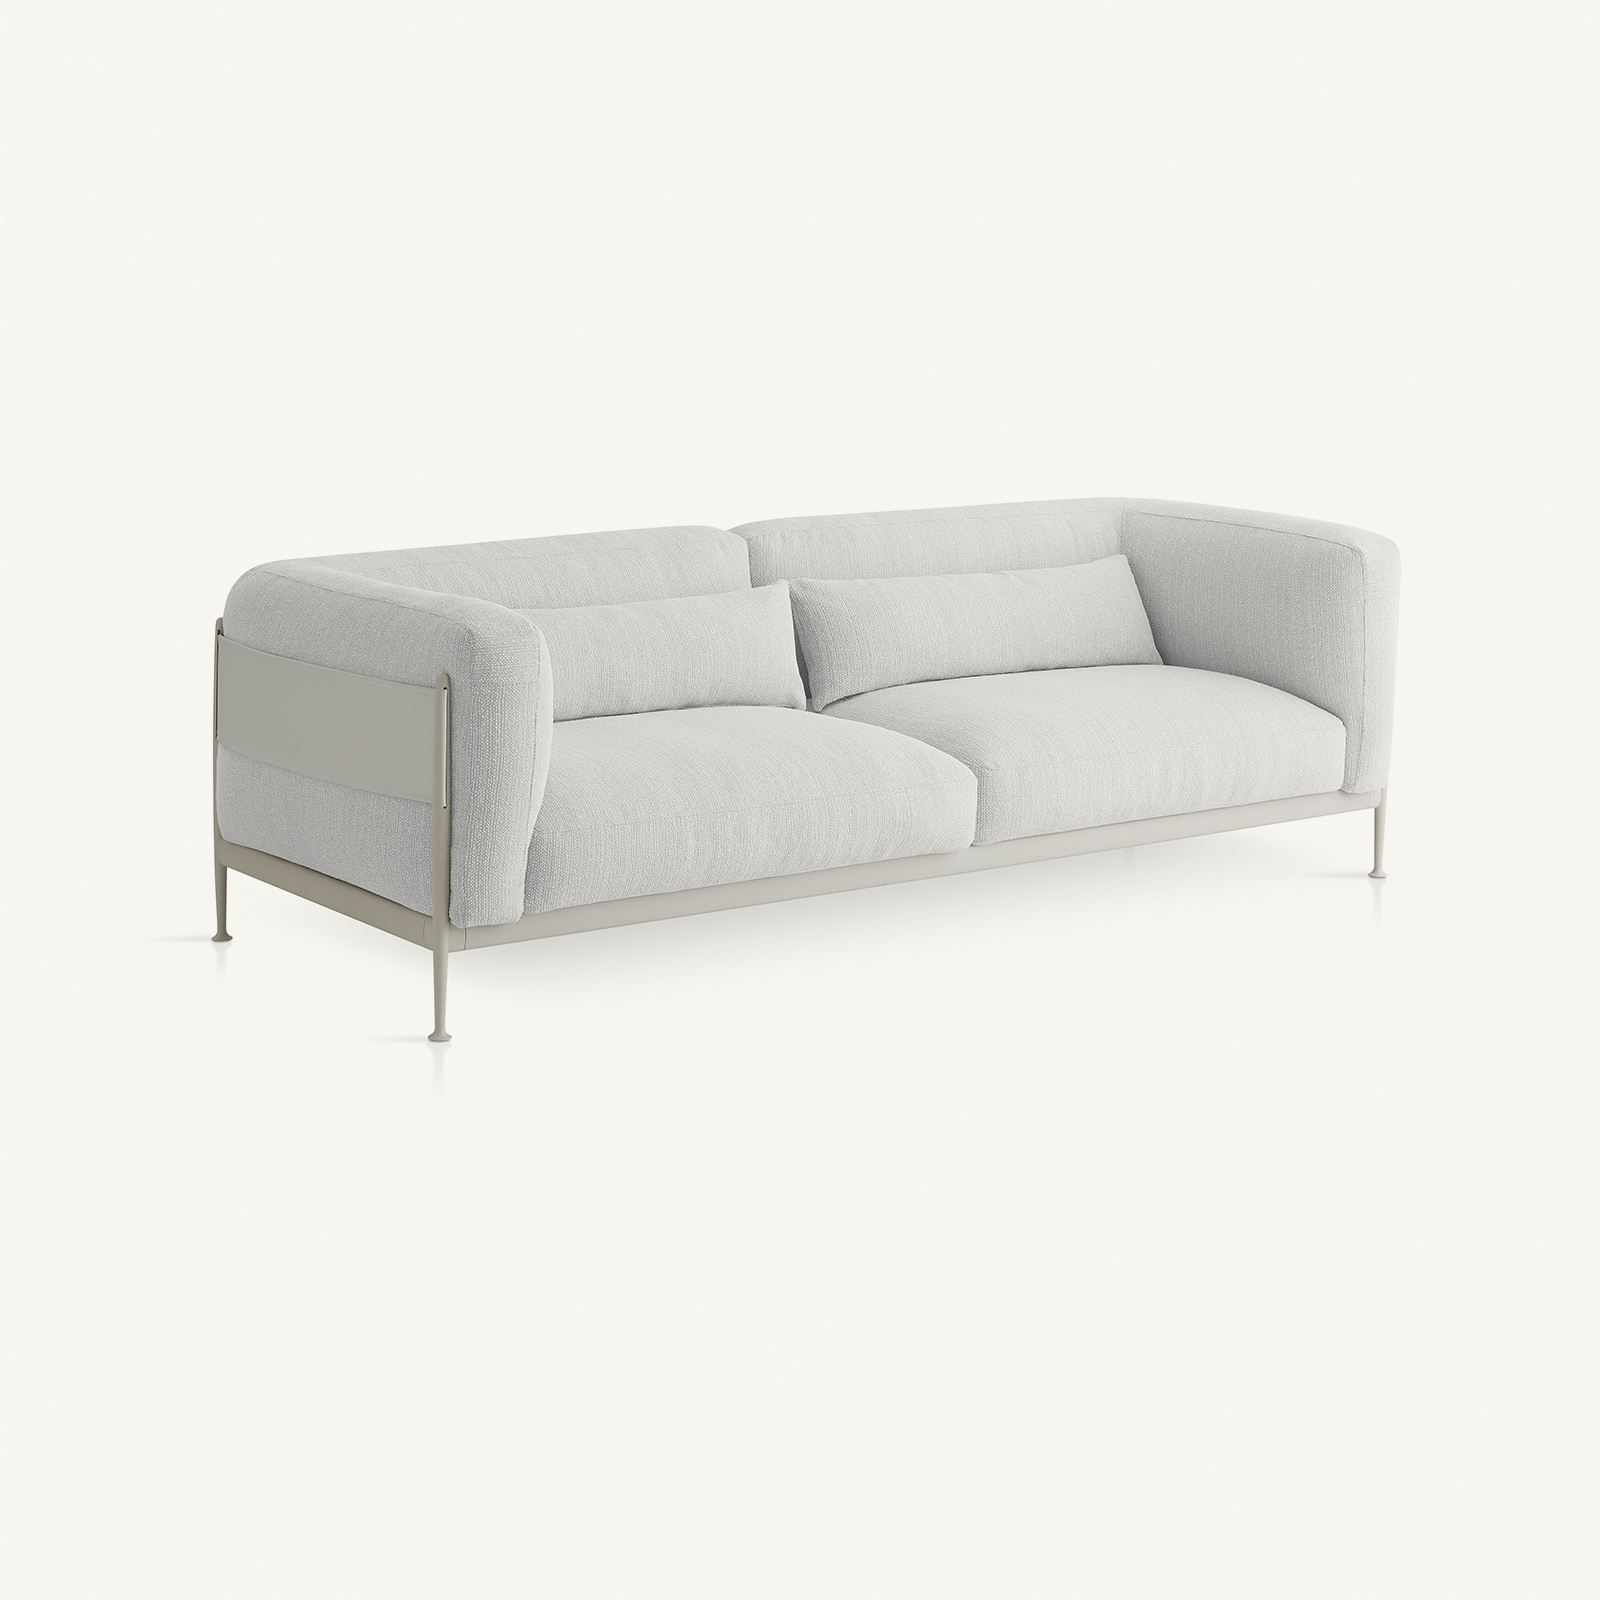 muebles de exterior - sofás - sofá obi